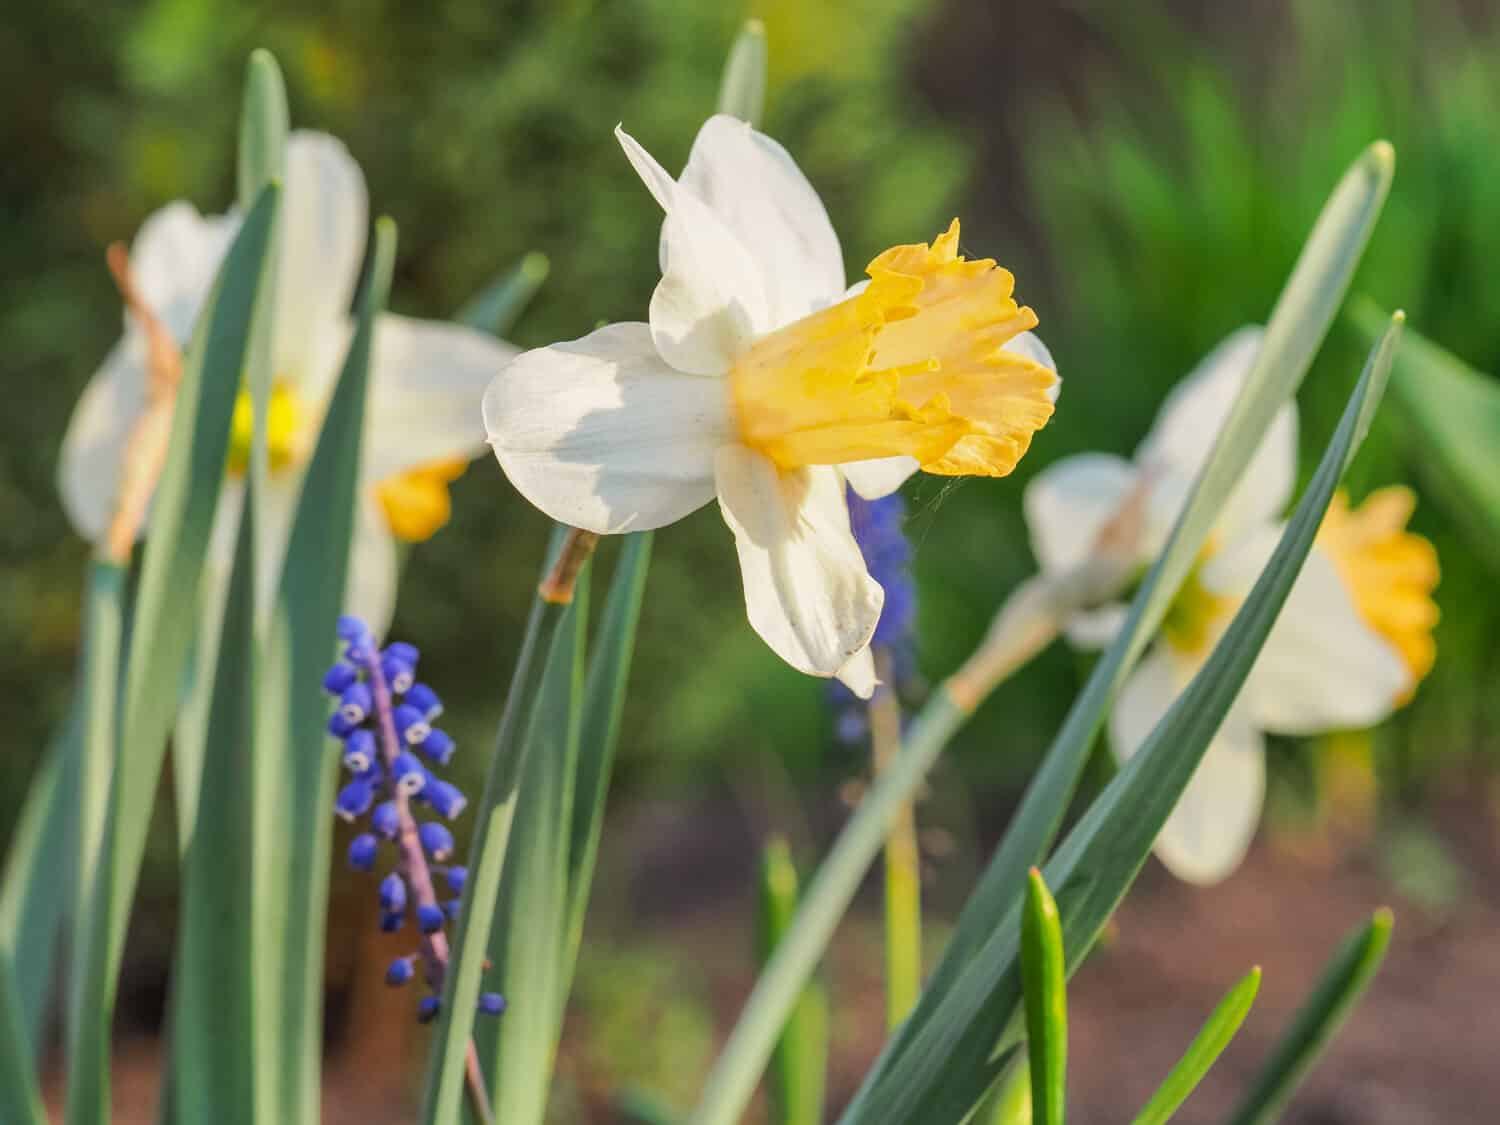 Daffodil Giltol o John Evelyn Narcissus, fiore bianco cremoso con corona albicocca-arancio, primo piano.  Il fiore fresco di Daffadowndilly o Jonquil è una pianta erbacea e fiorita della famiglia delle Amaryllidaceae.